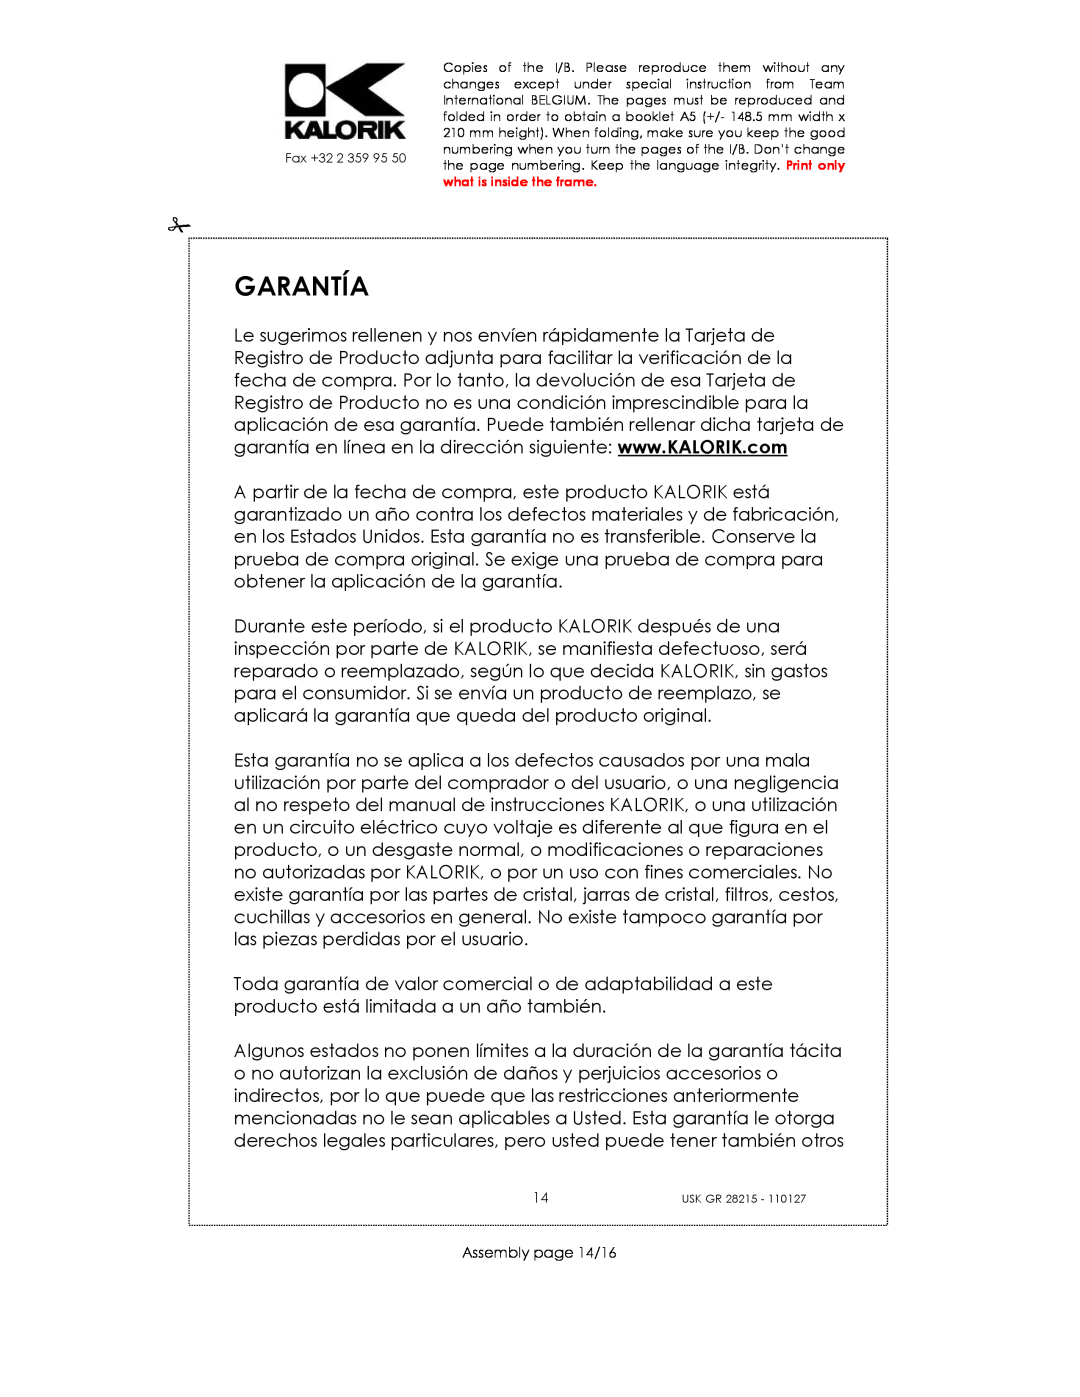 Kalorik USK GR 28215 manual Garantía, Assembly page 14/16 